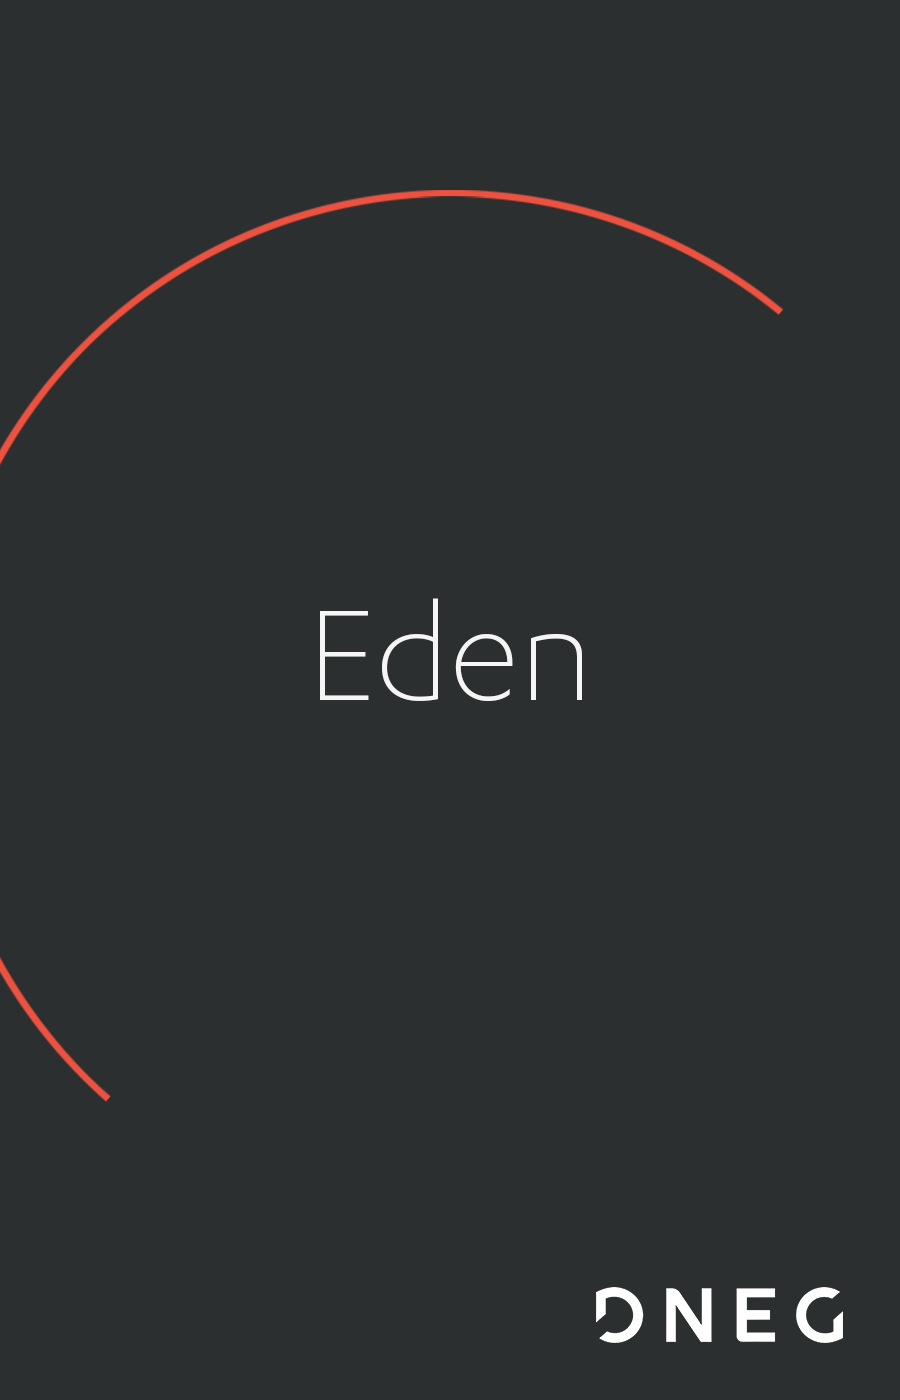 Eden - DNEG